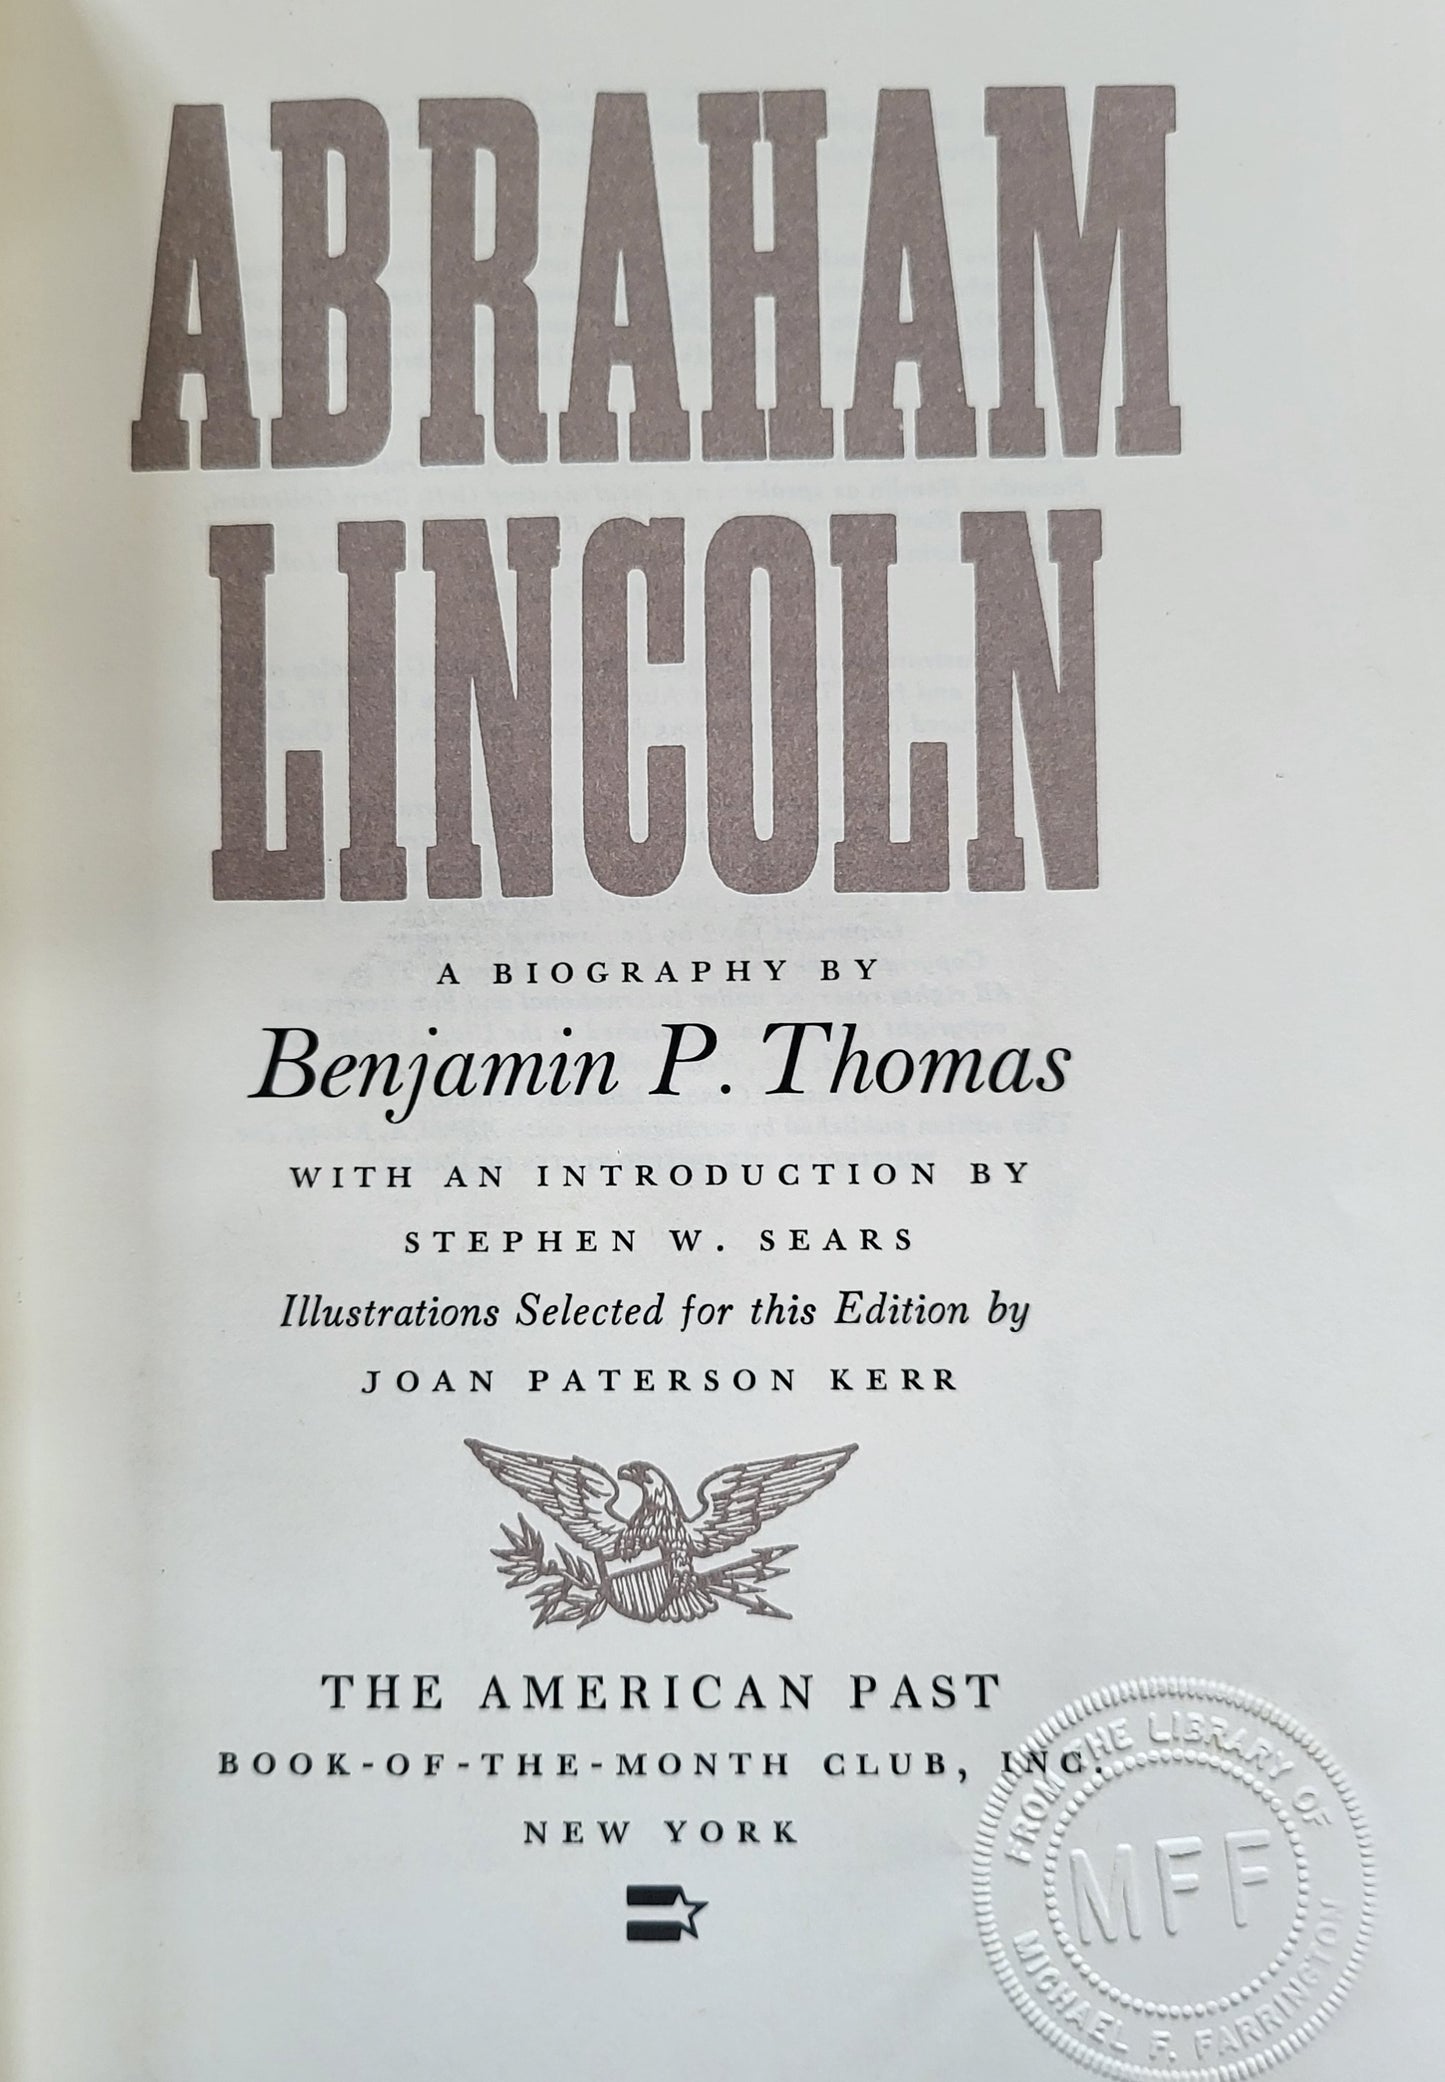 "Abraham Lincoln" a Biography by Benjamin P. Thomas - 1986